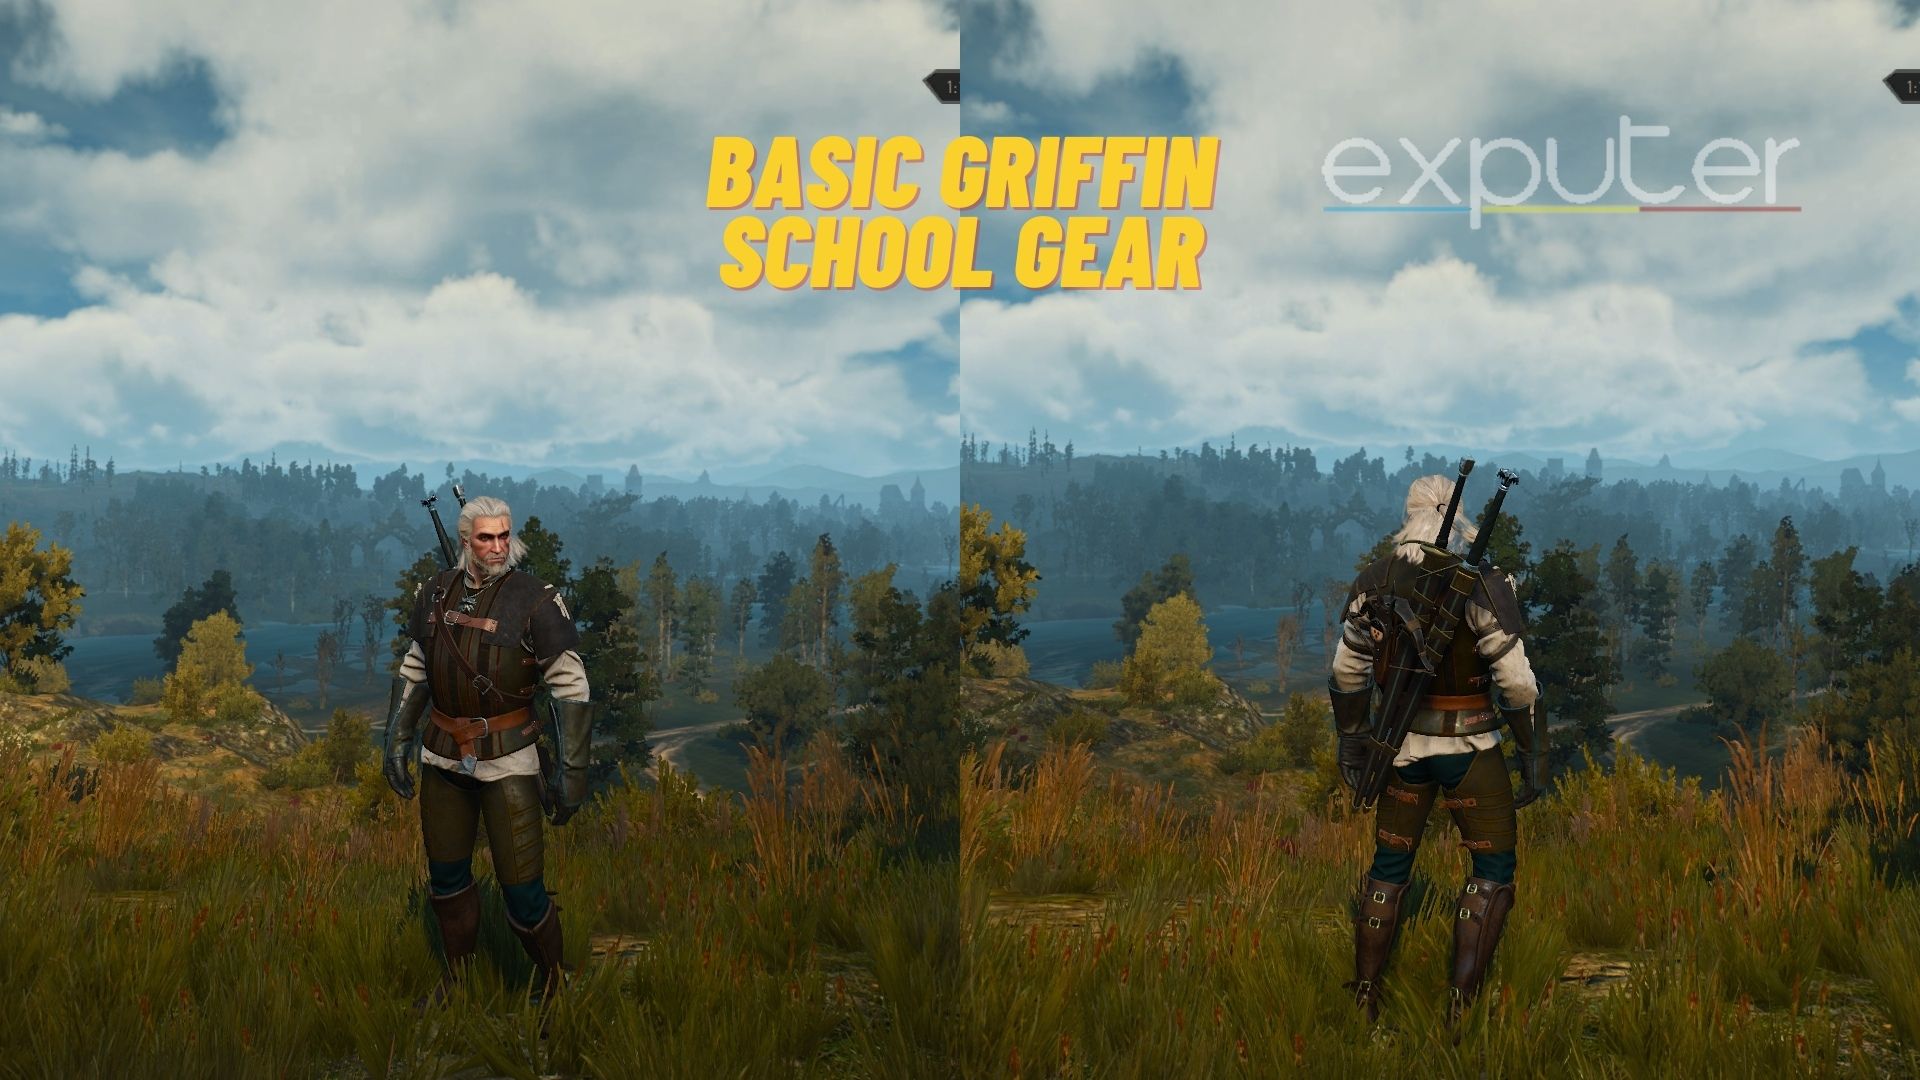 Witcher 3 Basic Griffin School Gear.